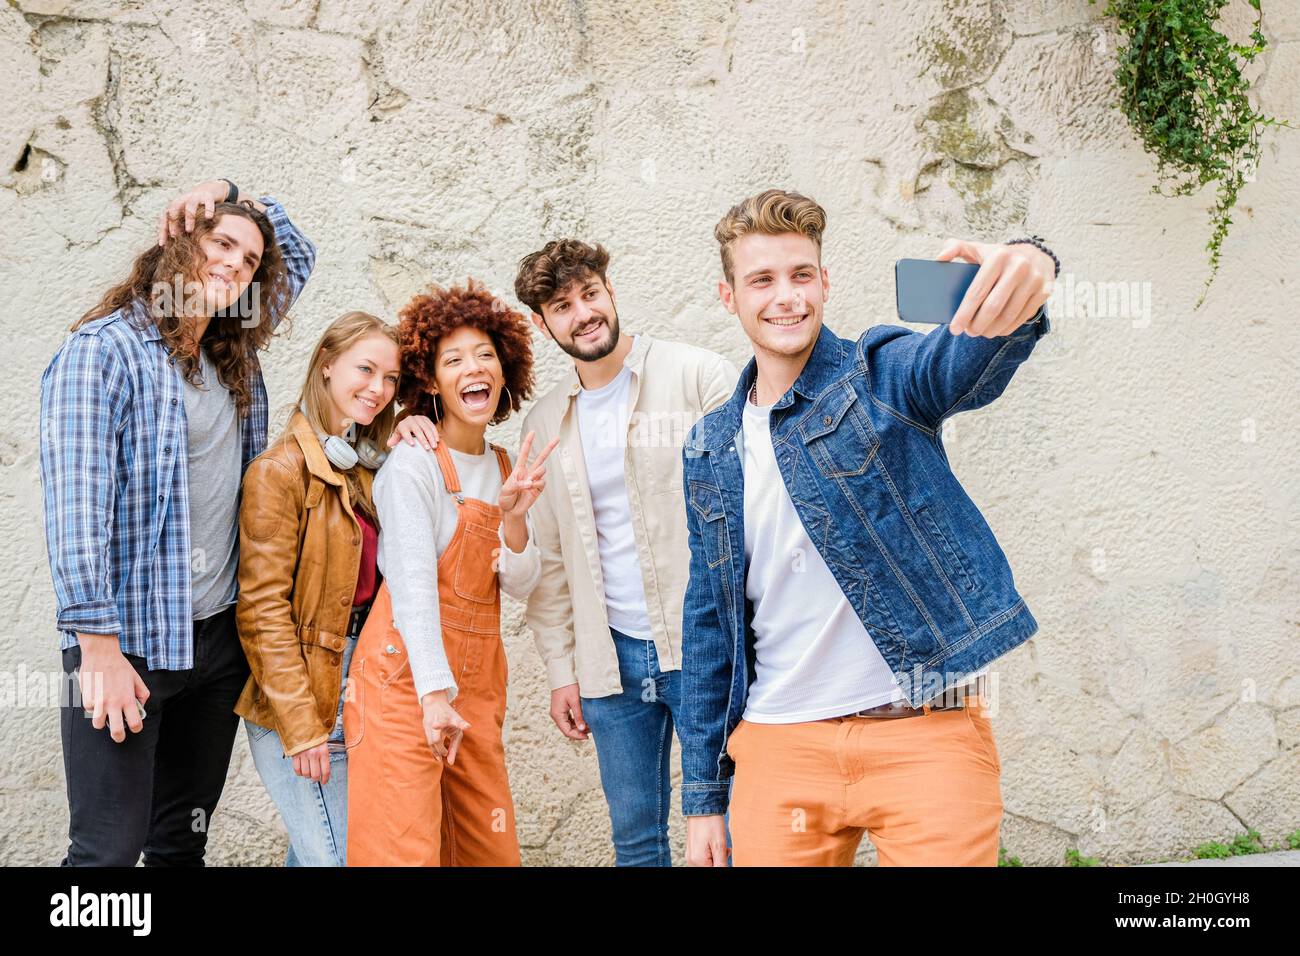 Giovani felici che prendono selfie in città - multirazziale gruppo di amici sta scattando una foto guardando la macchina fotografica Foto Stock